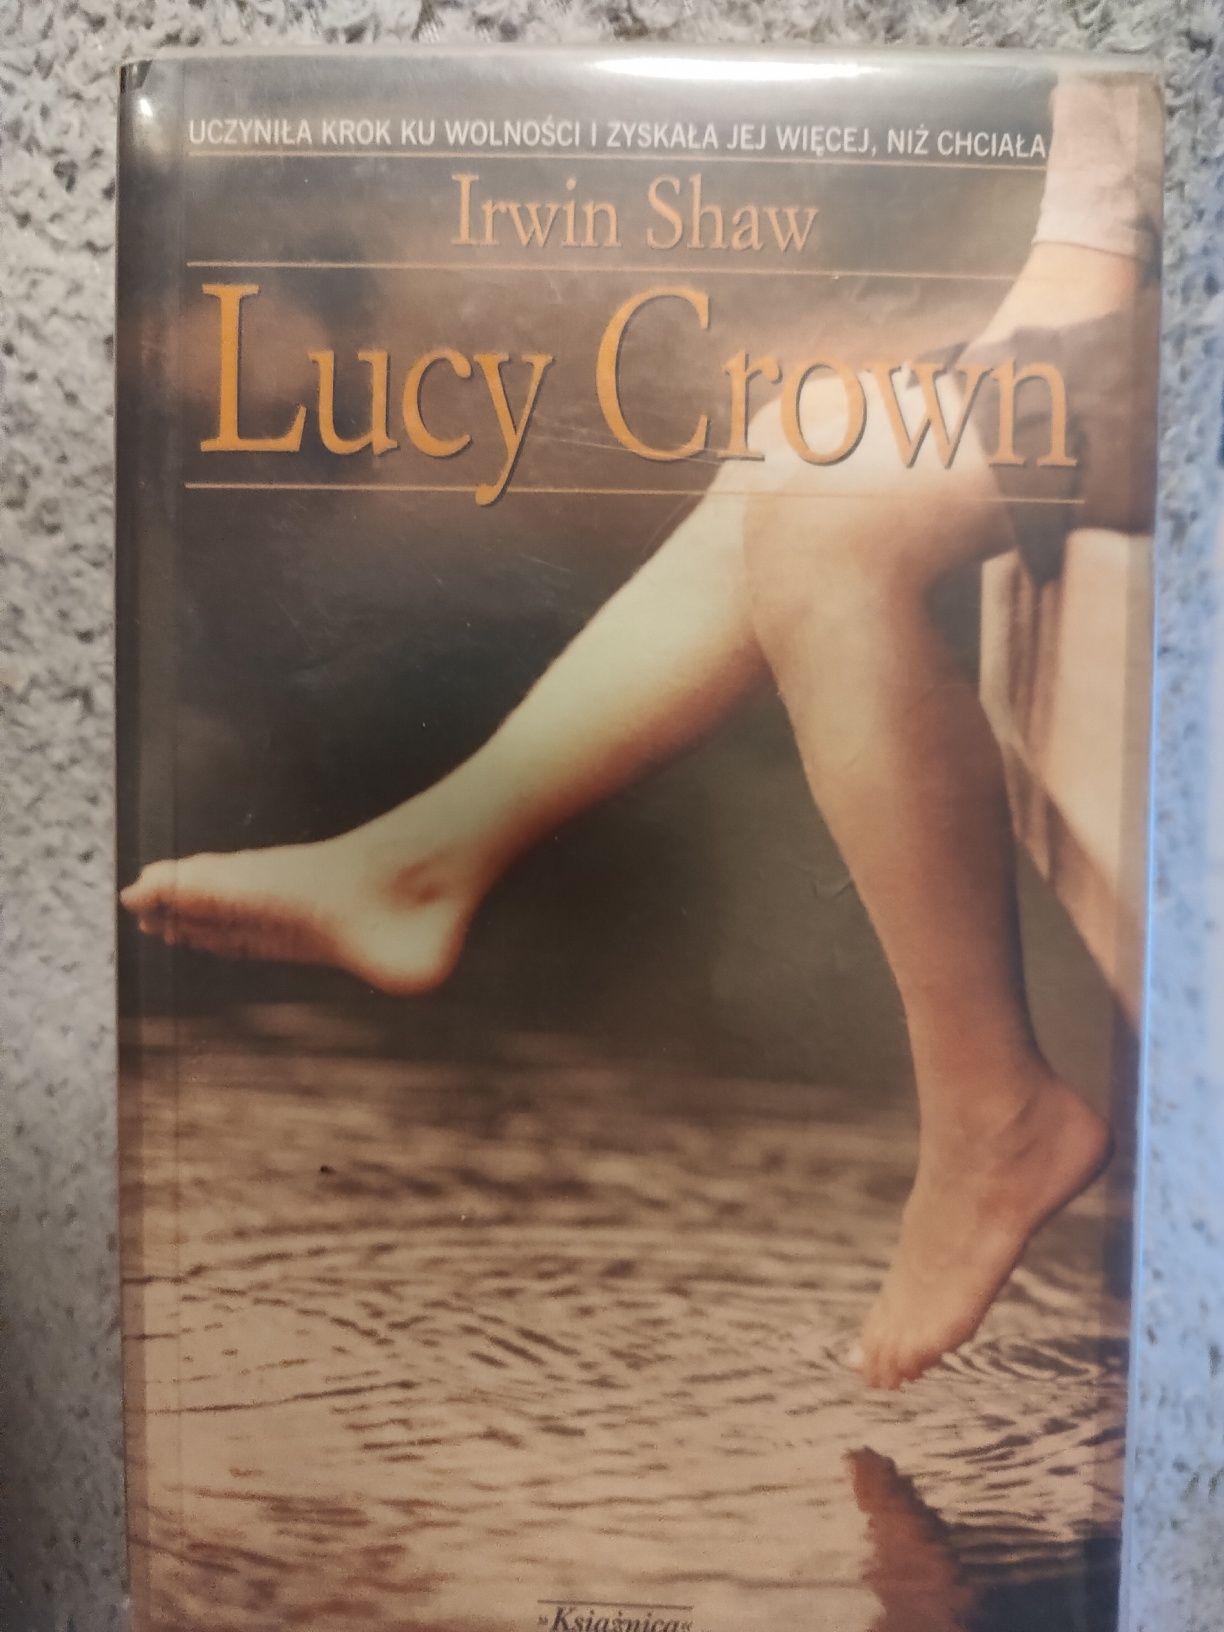 Książka Irwin Shaw "Lucy Crown"